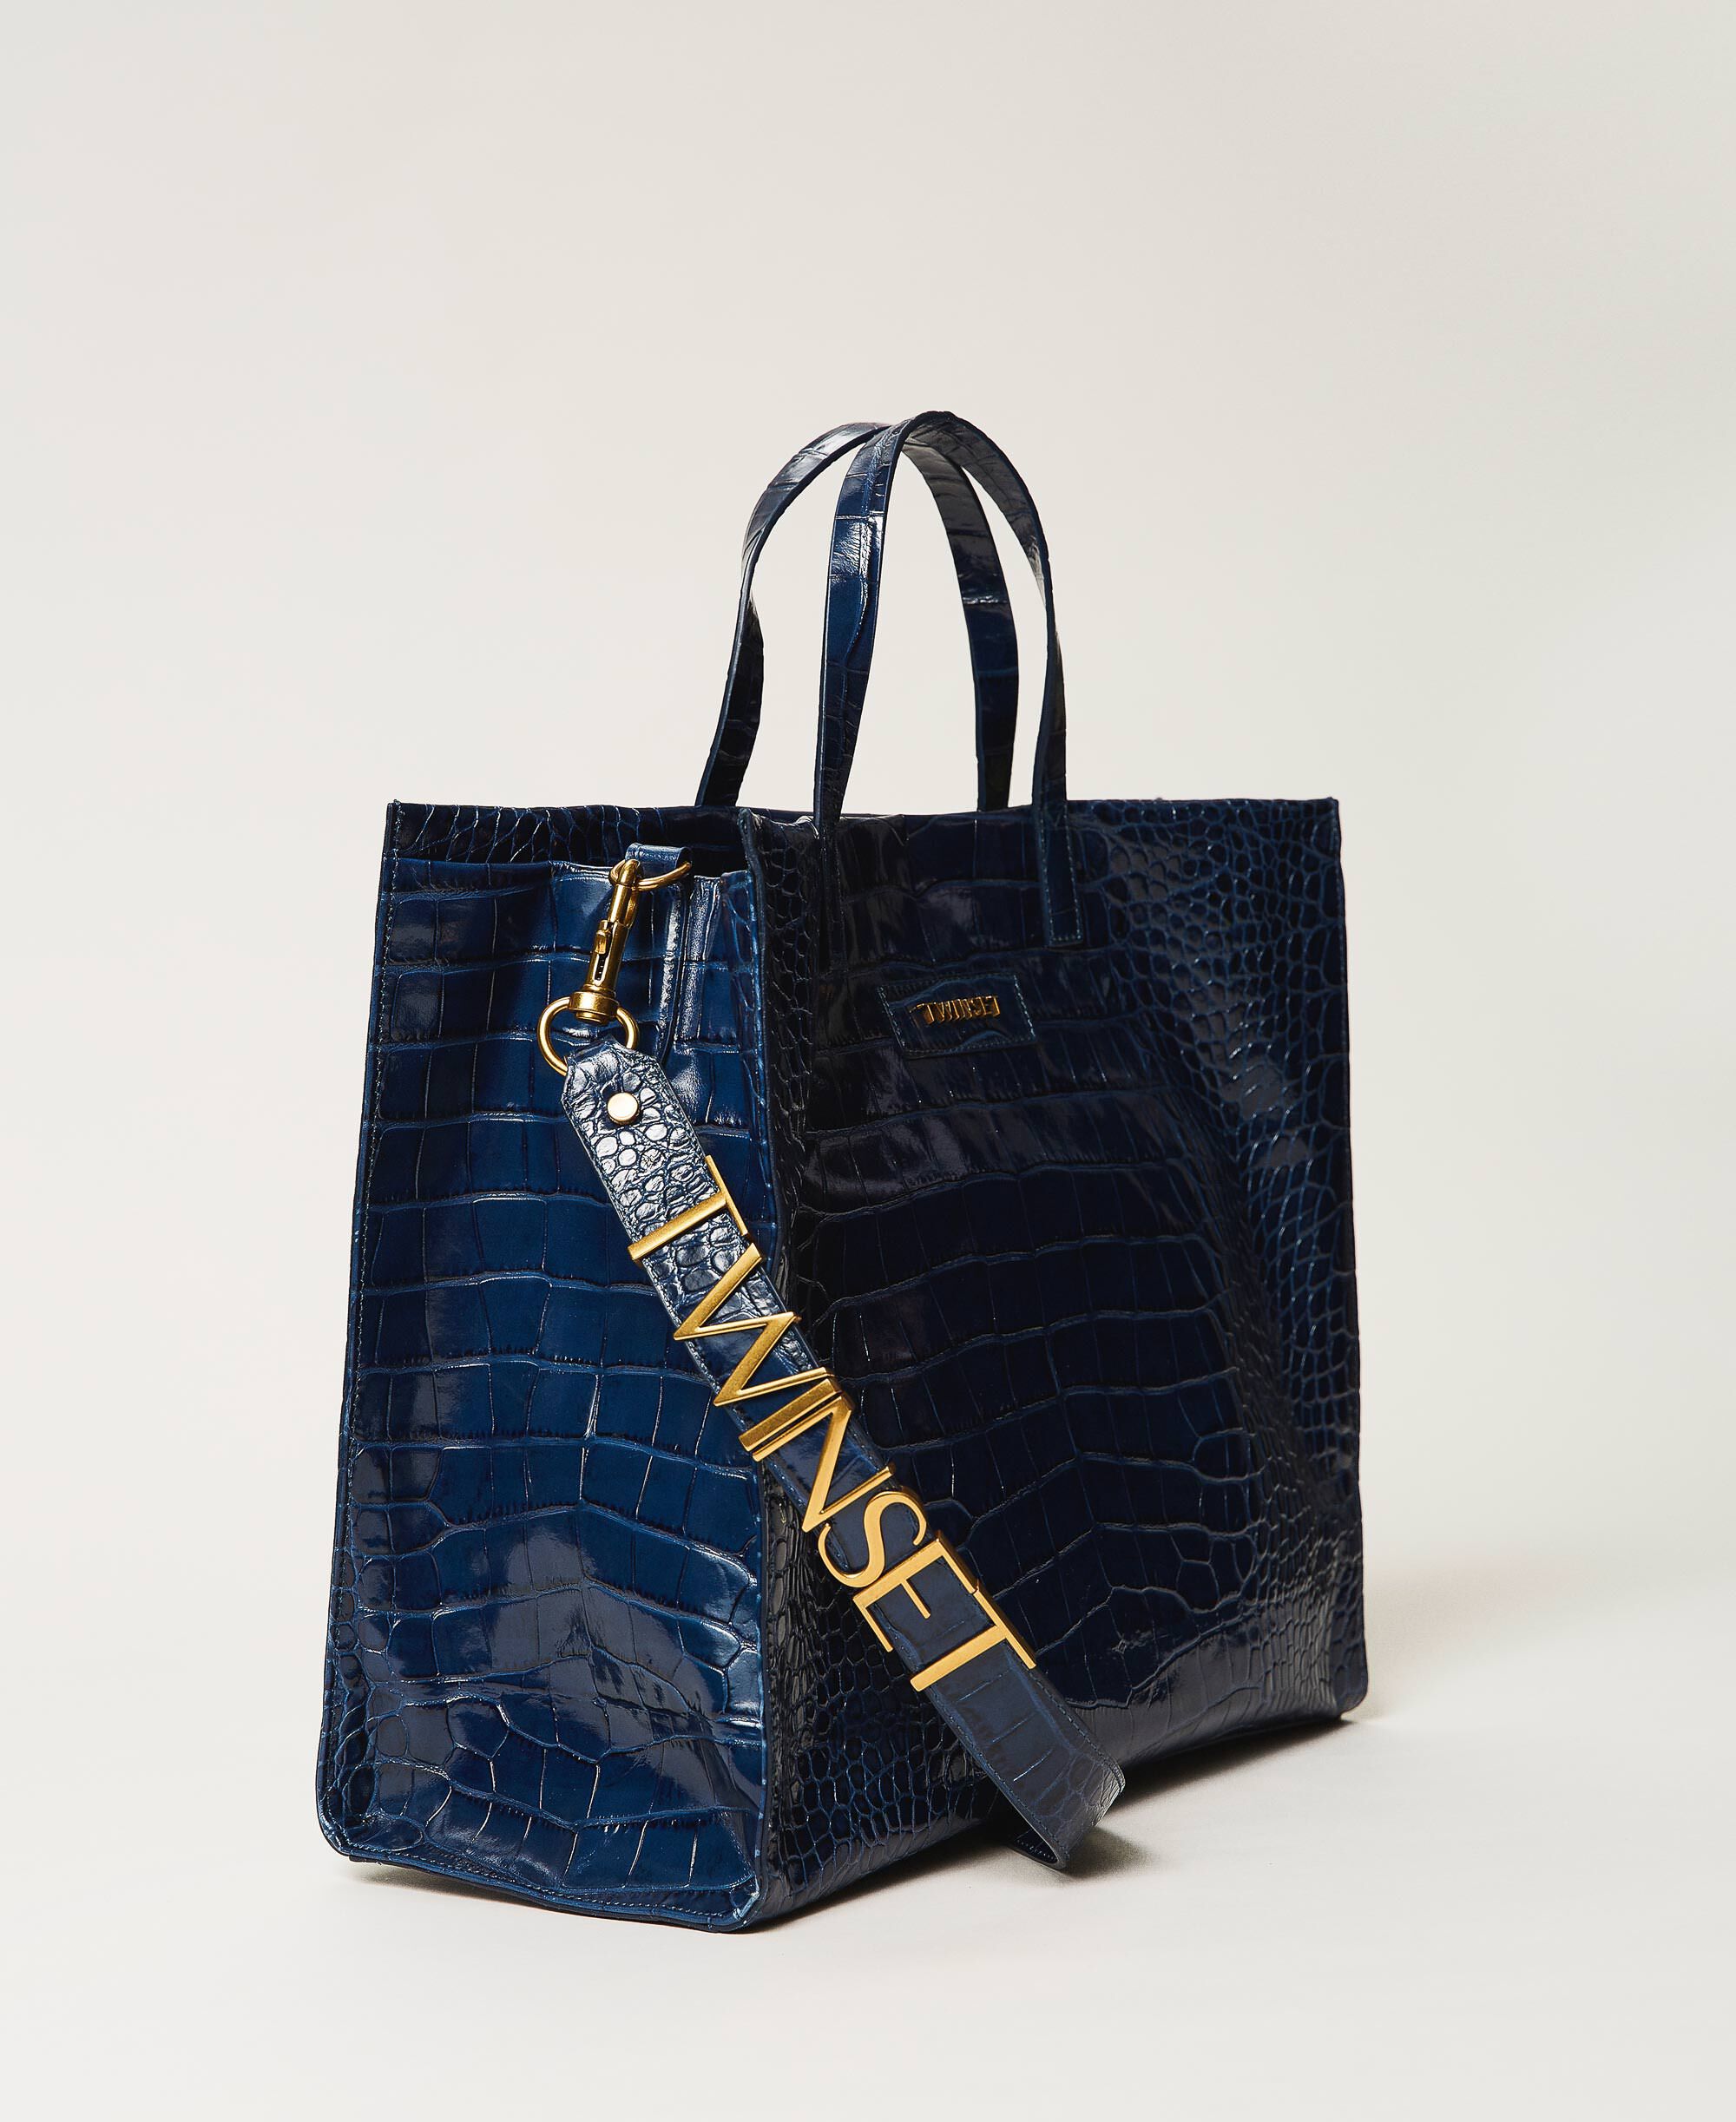 vecino Estar confundido Interpretación Bolso shopper Twinset Bag grande de piel Mujer, Azul | TWINSET Milano